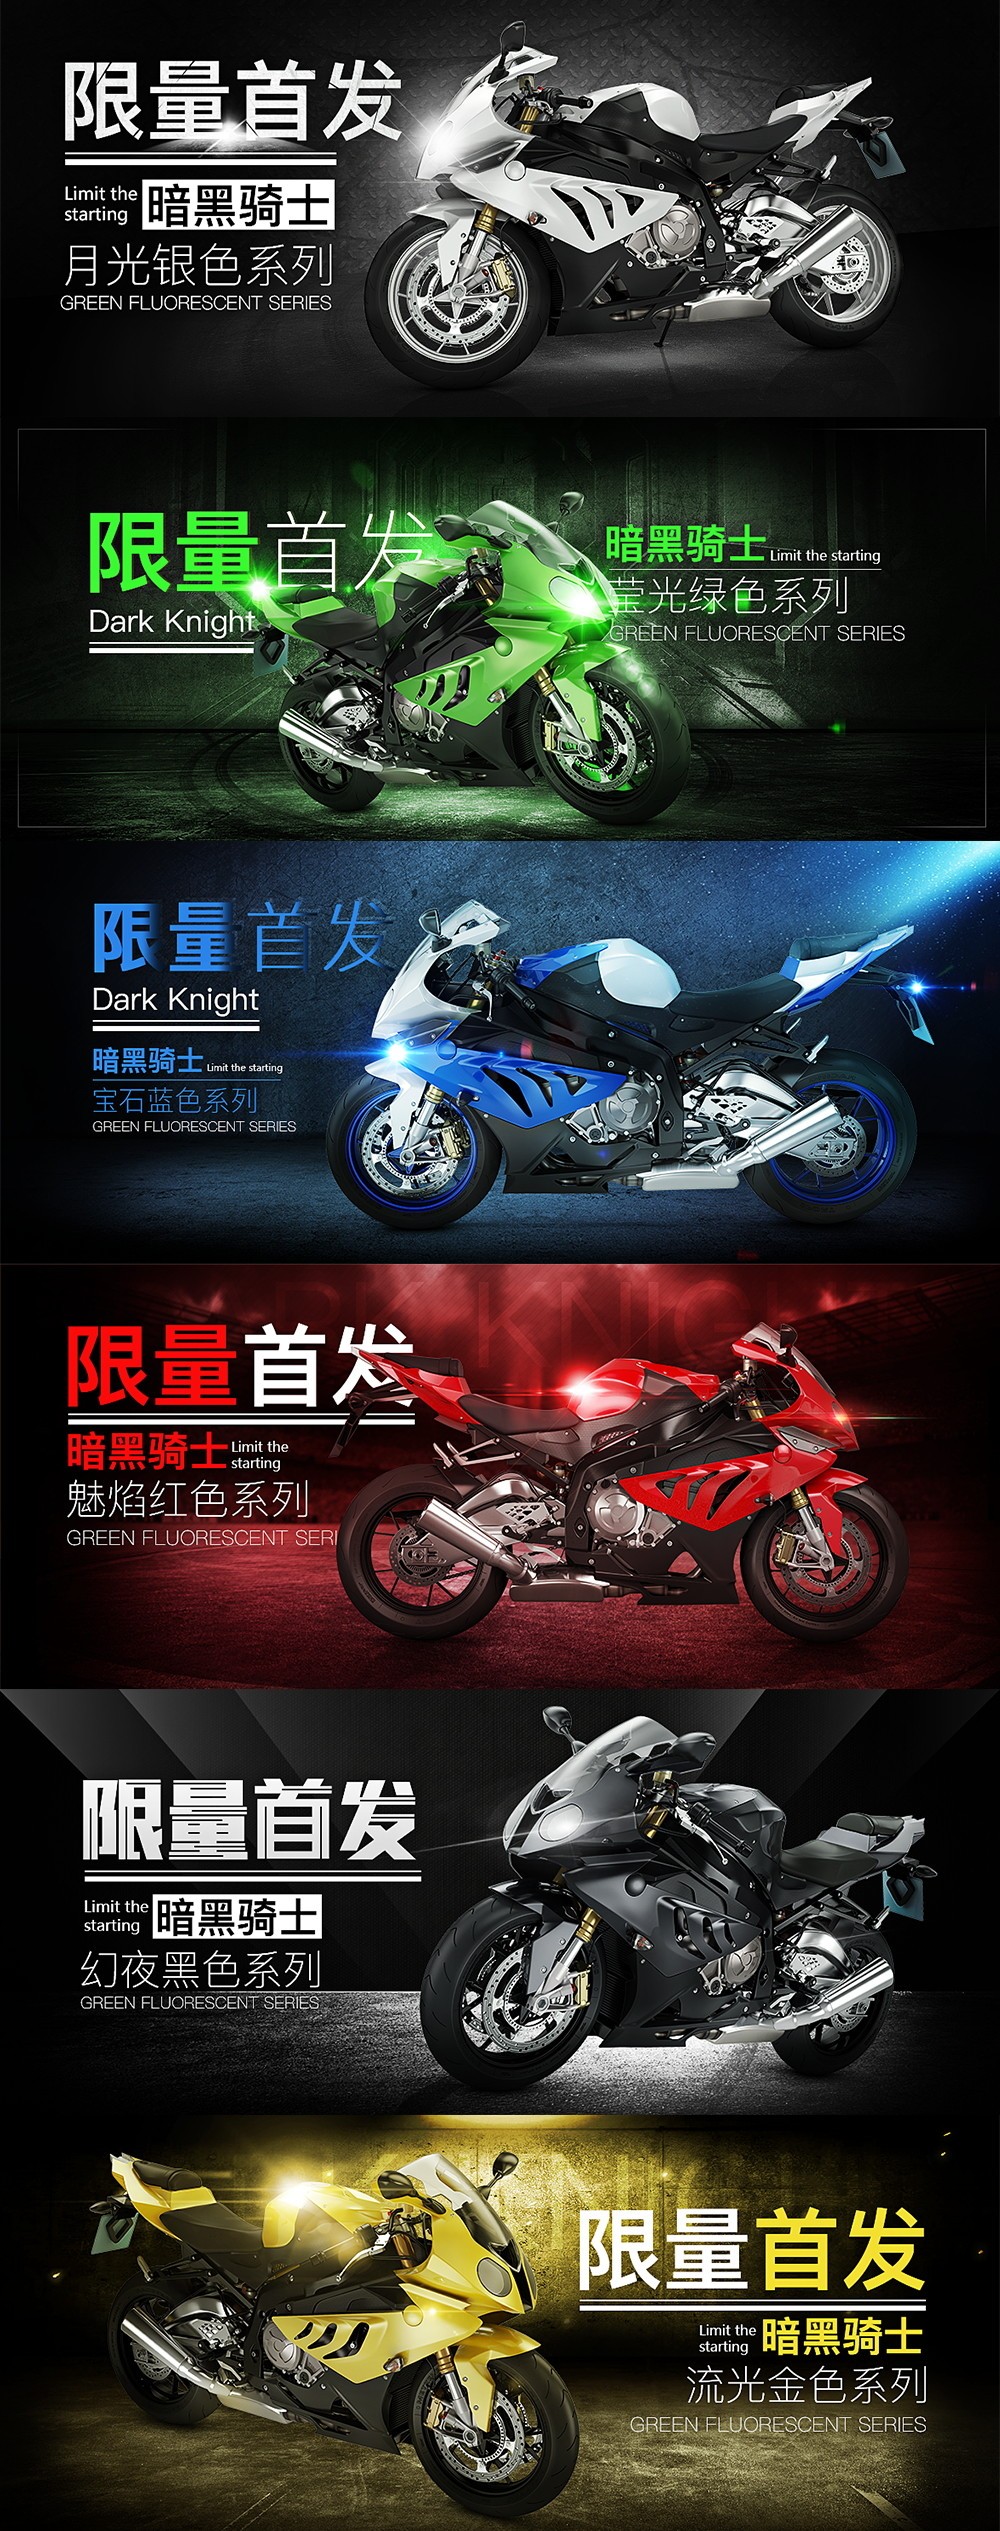 淘宝美工乙木摩托车产品轮播海报设计场景合成炫酷效果作品